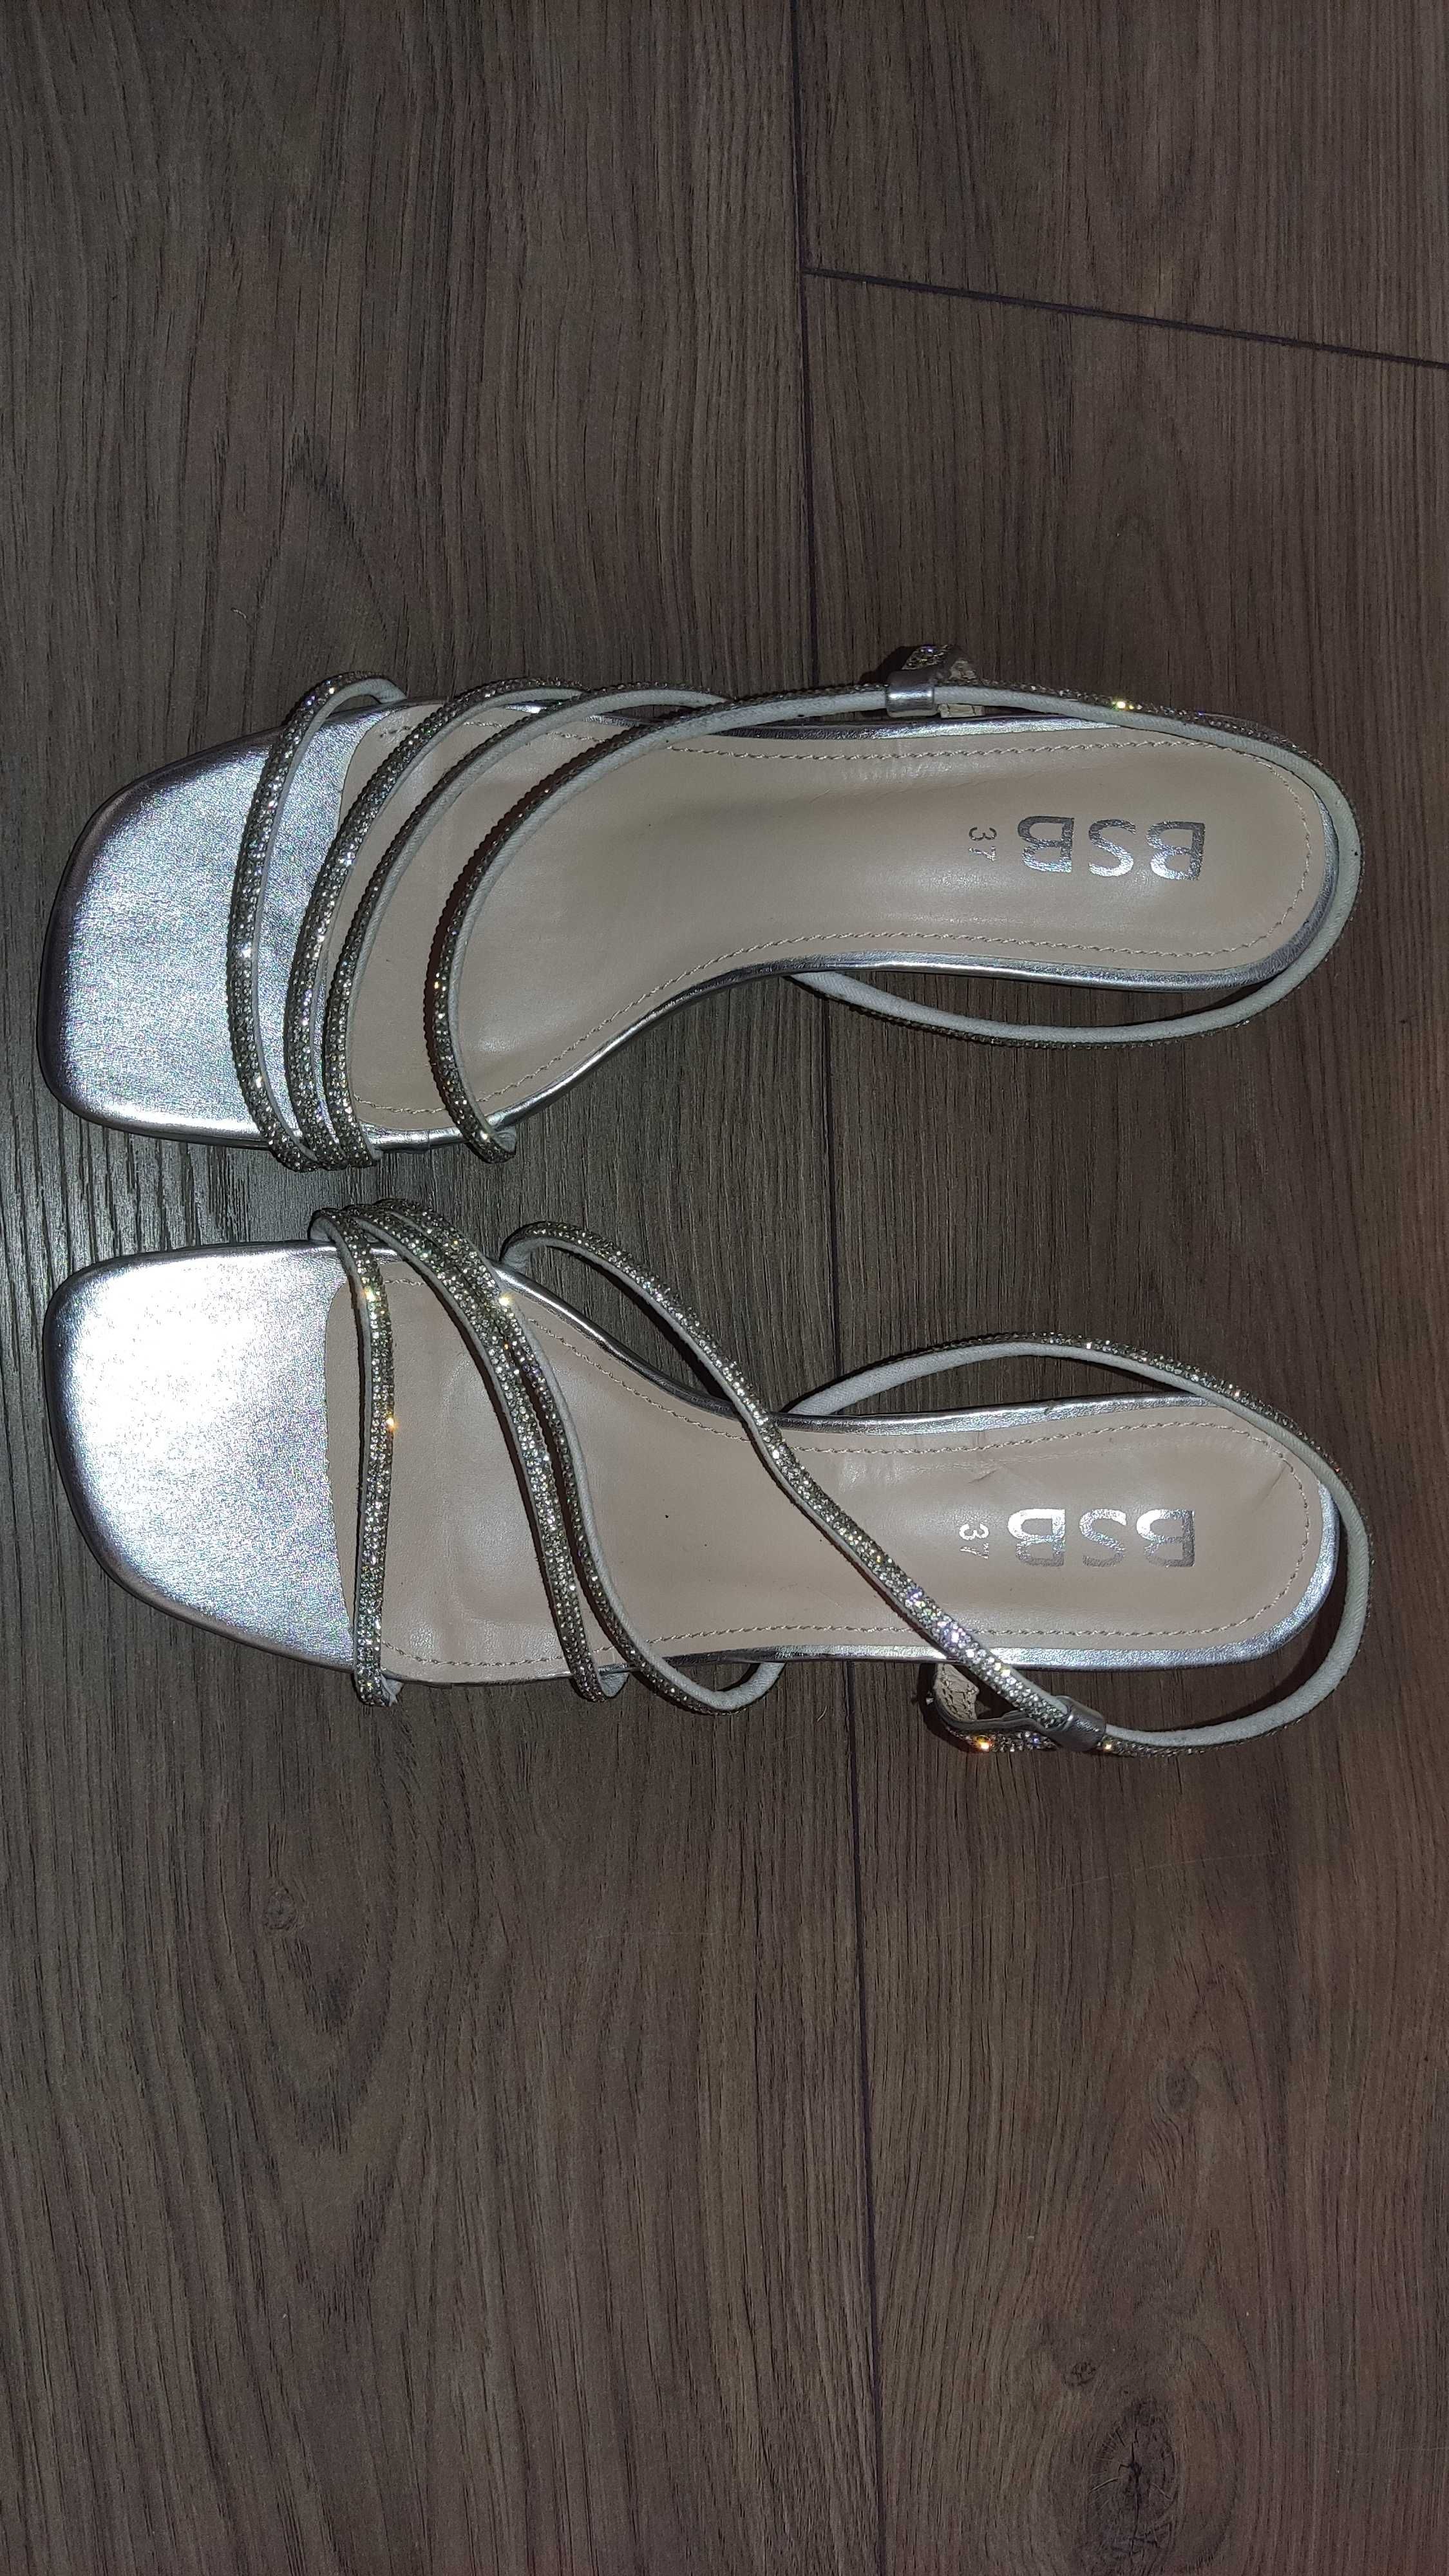 Елегантни маркови дамски сандали с камъни BSB, номер 37